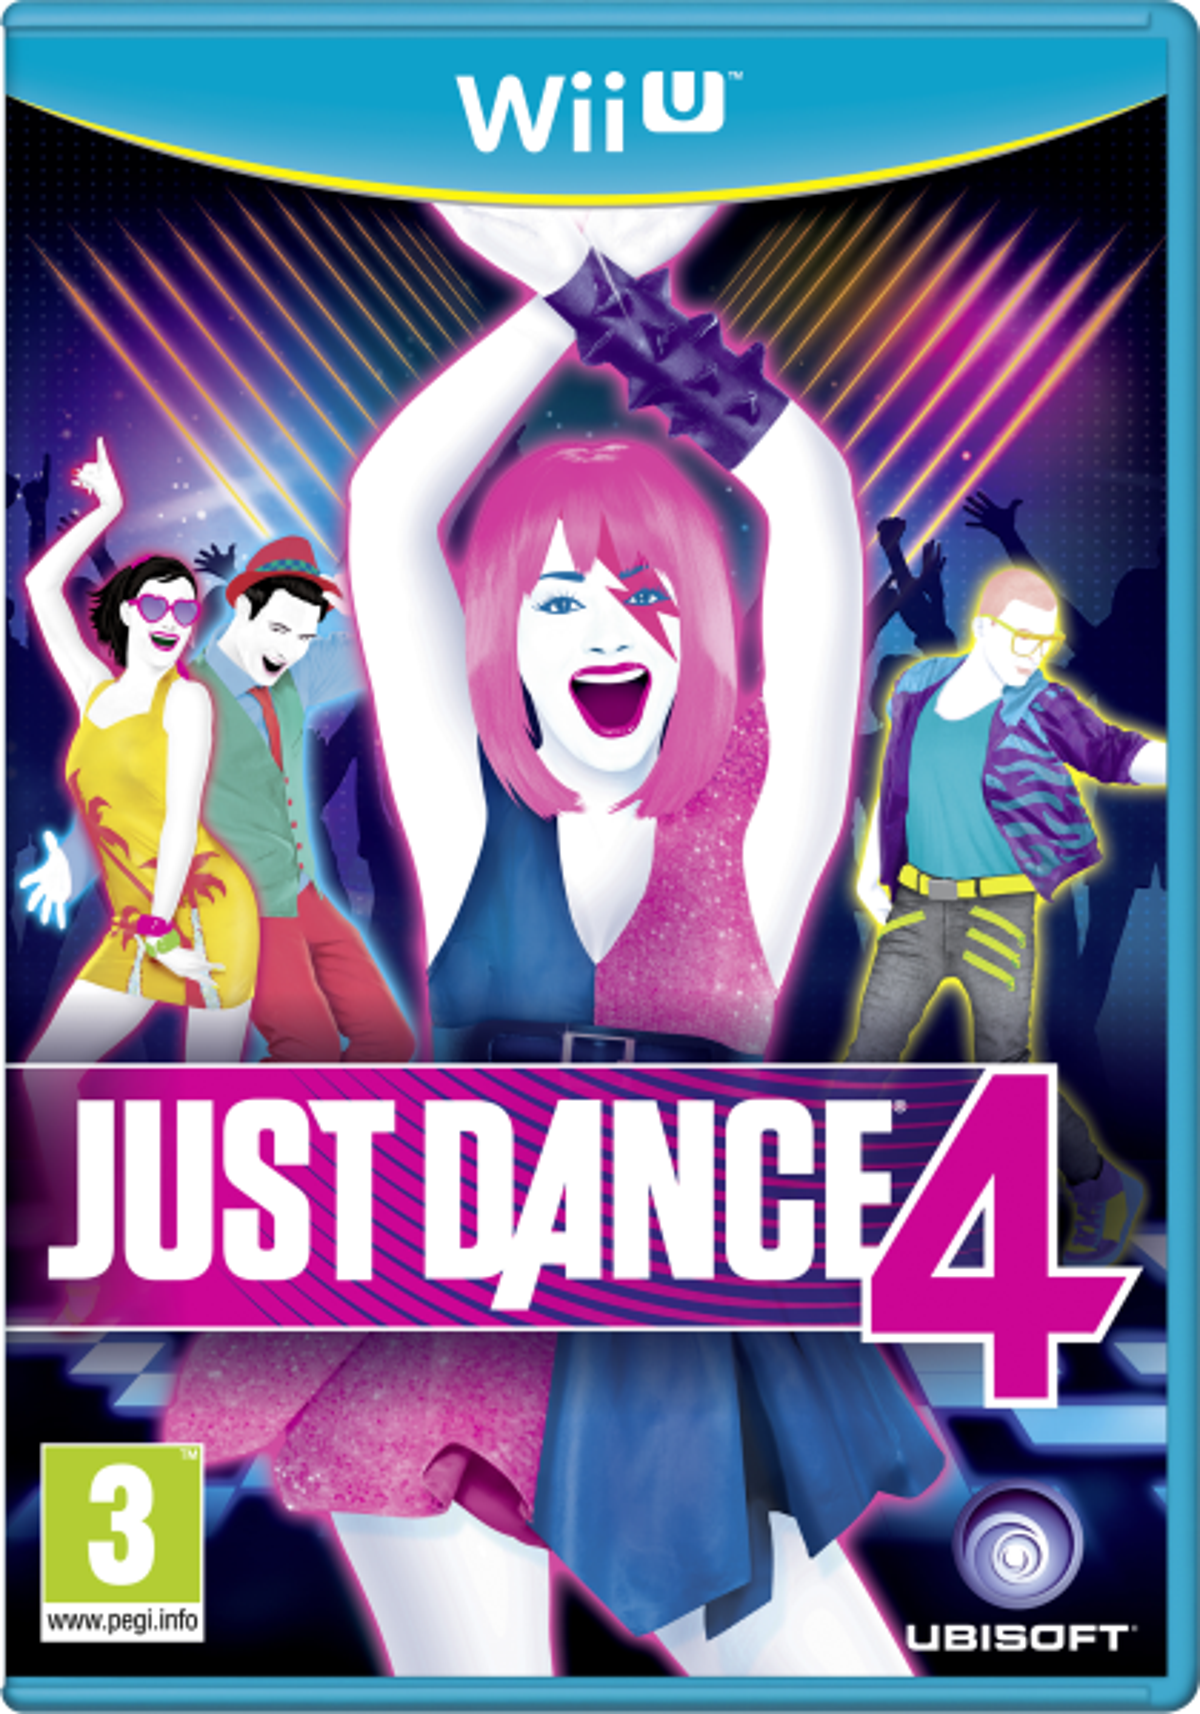 Análisis de Just Dance 2024 Edition: Es la saga más vendida de